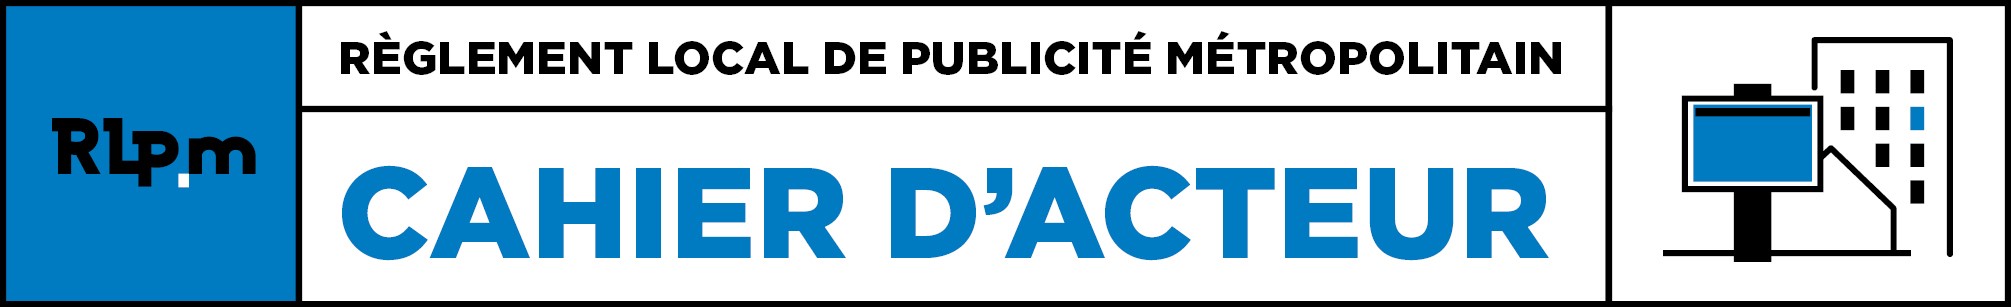 Concertation publique RLPm : les propositions de RAP Nantes